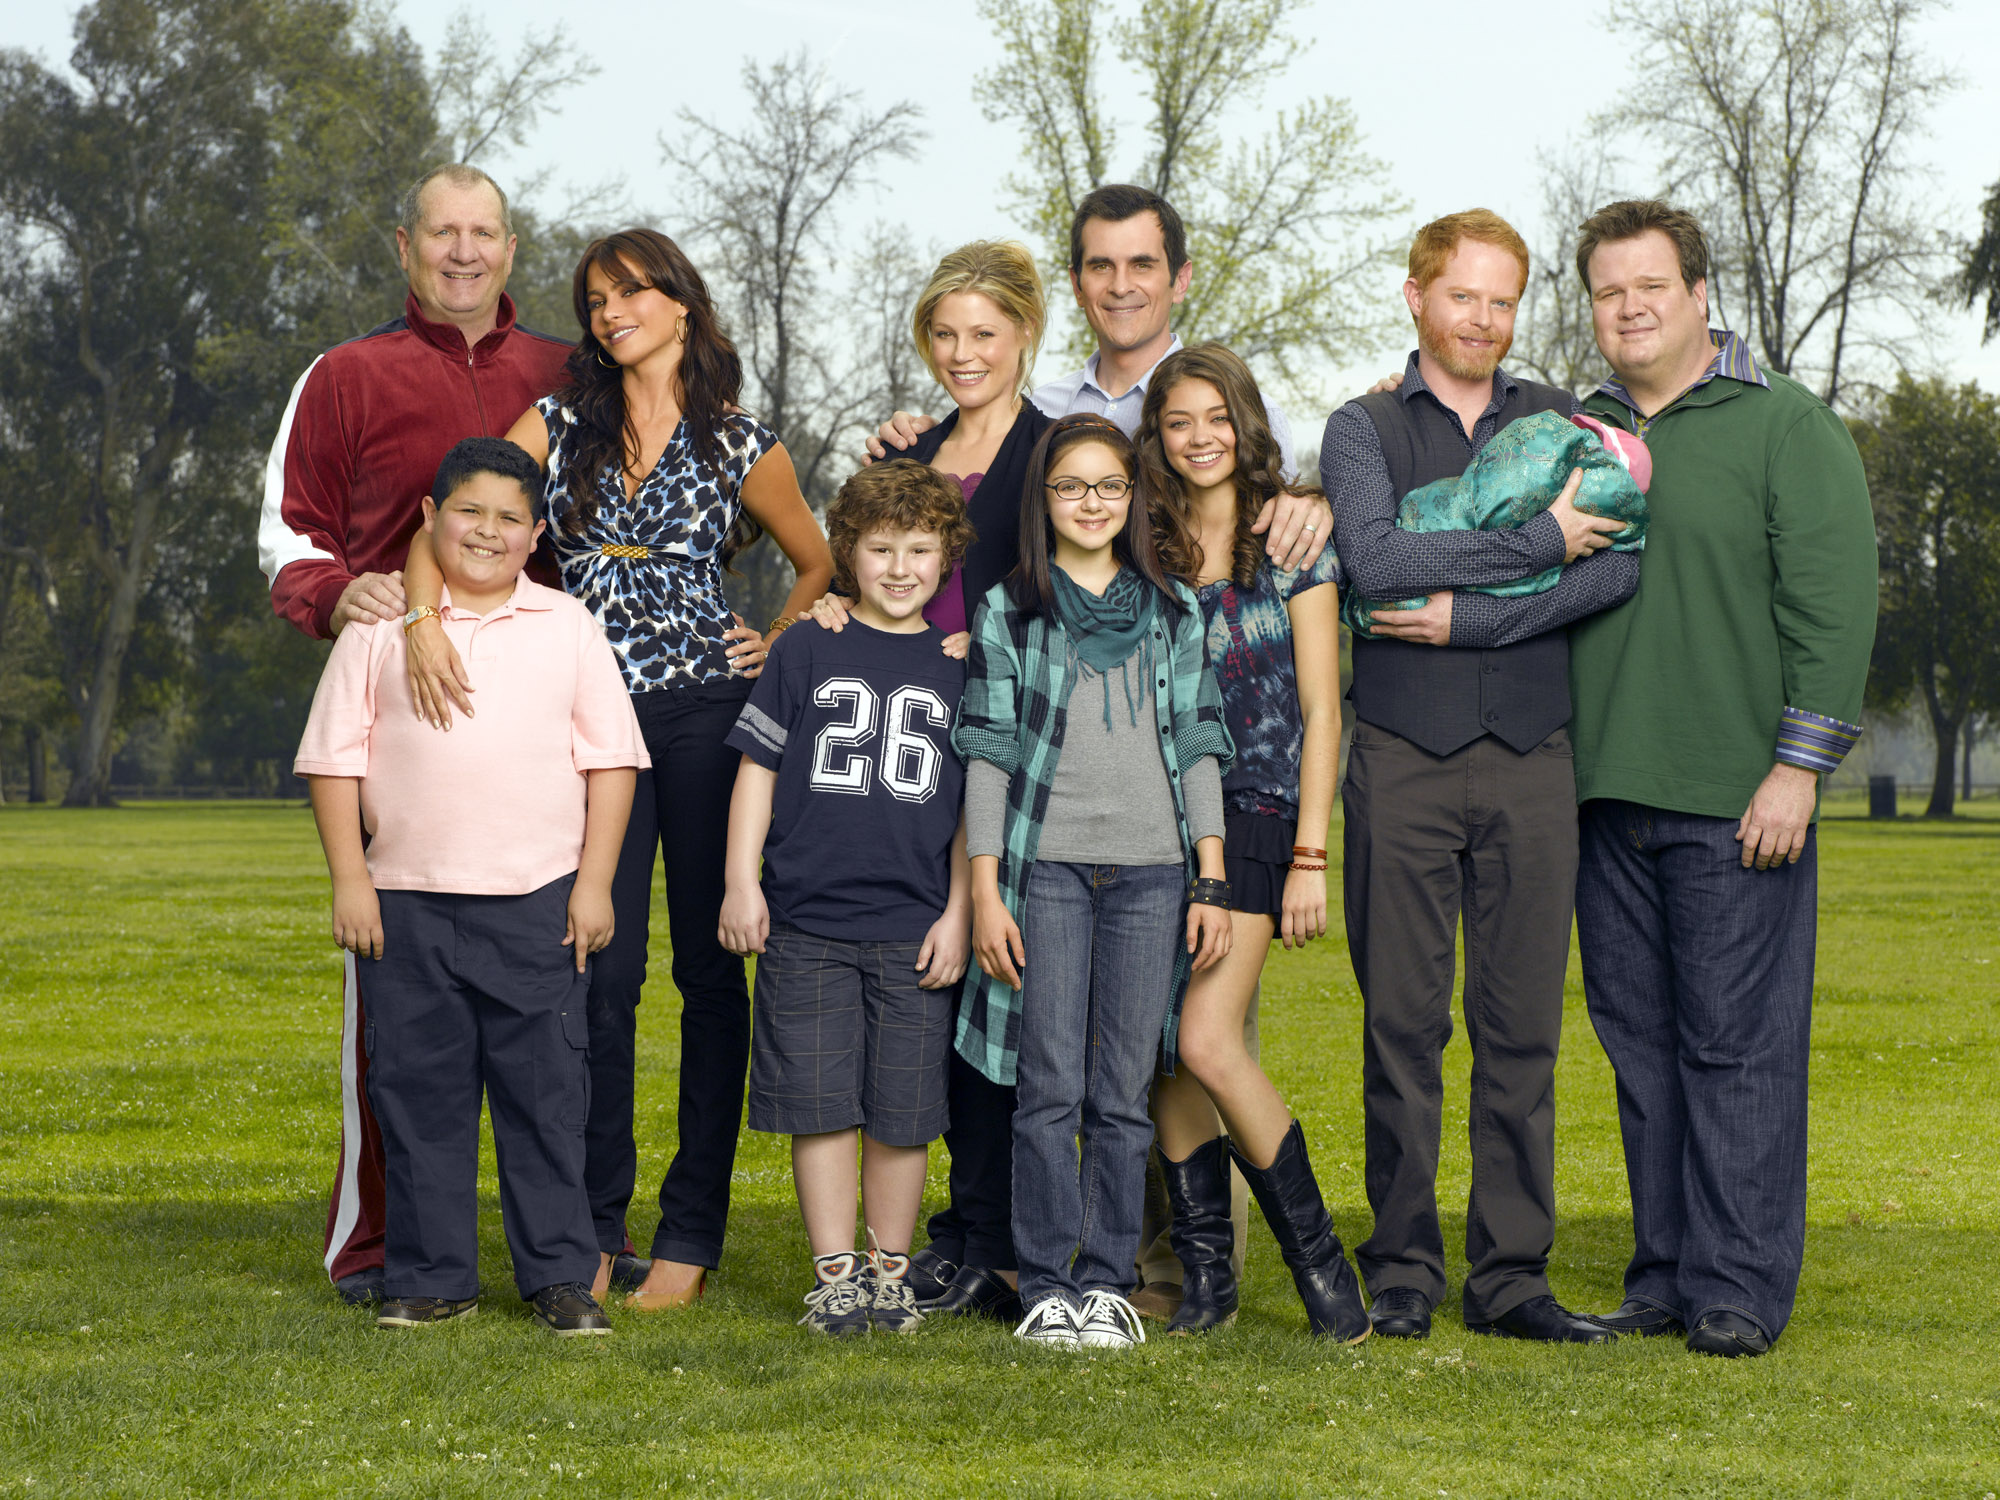 Modern Family Cast Photo: 2020 vs 2009